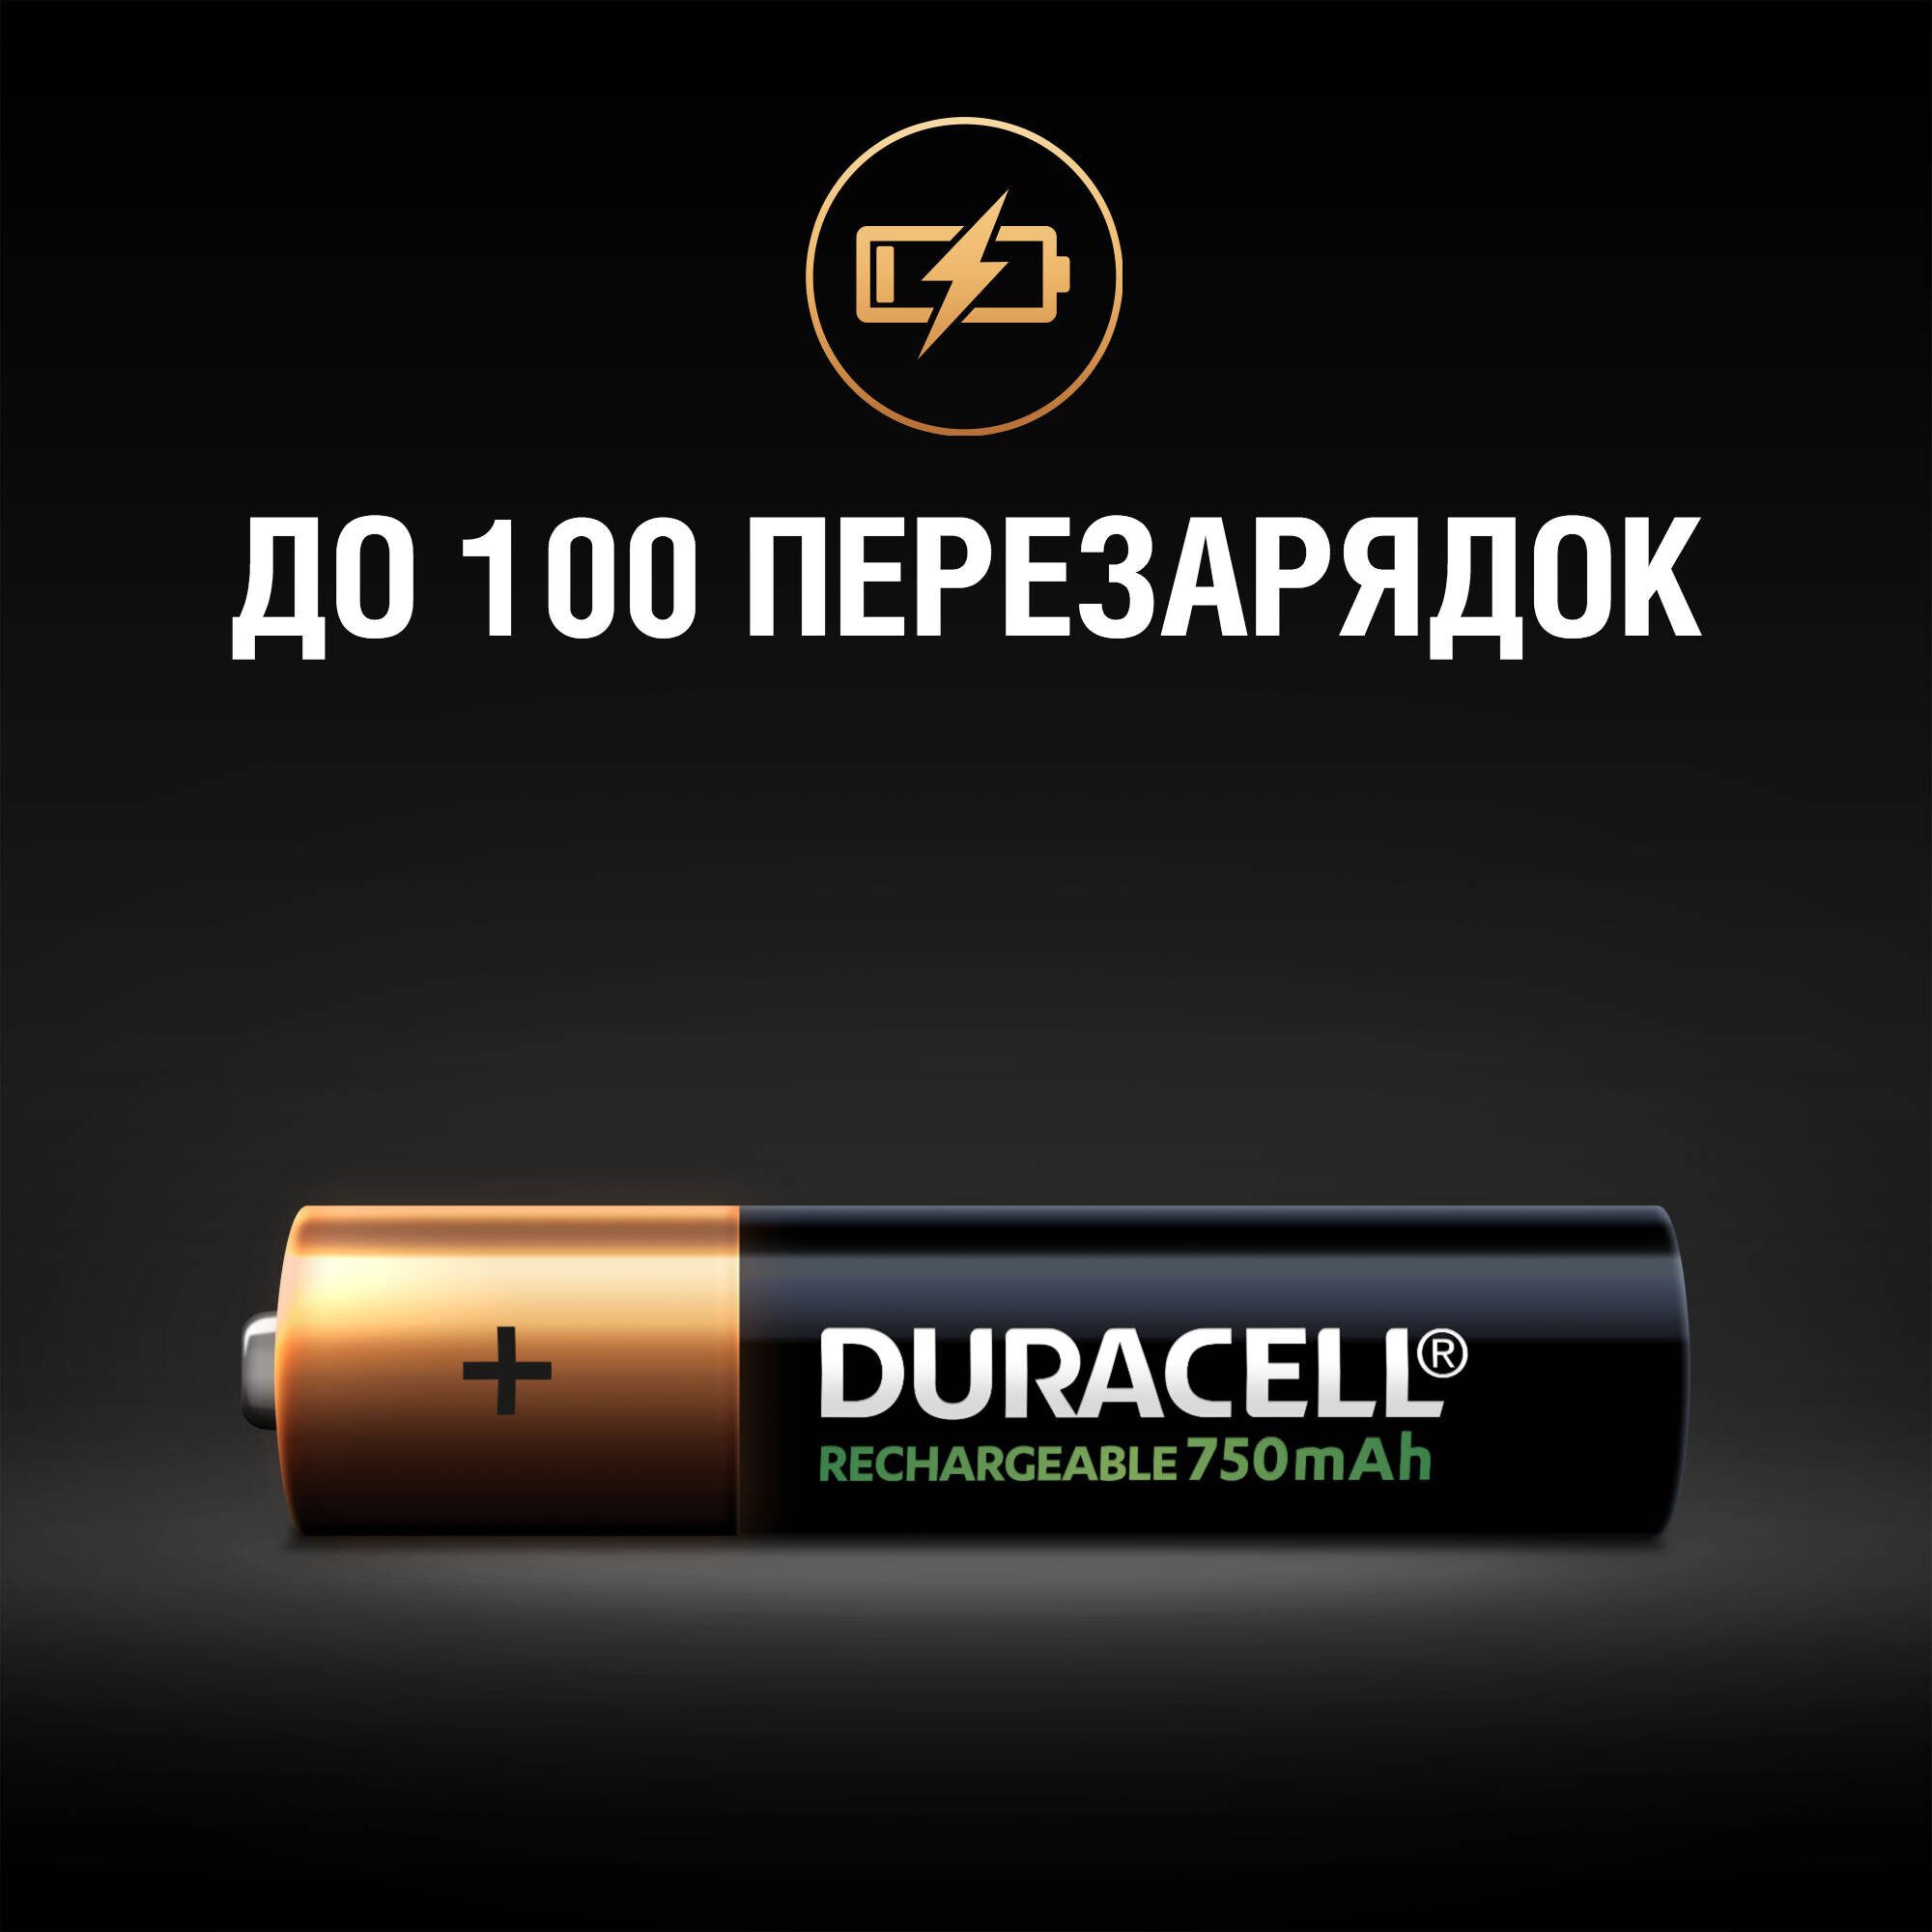 Аккумулятор Duracell Recharge AAA 750 mAh 4 шт. отзывы - изображения 5